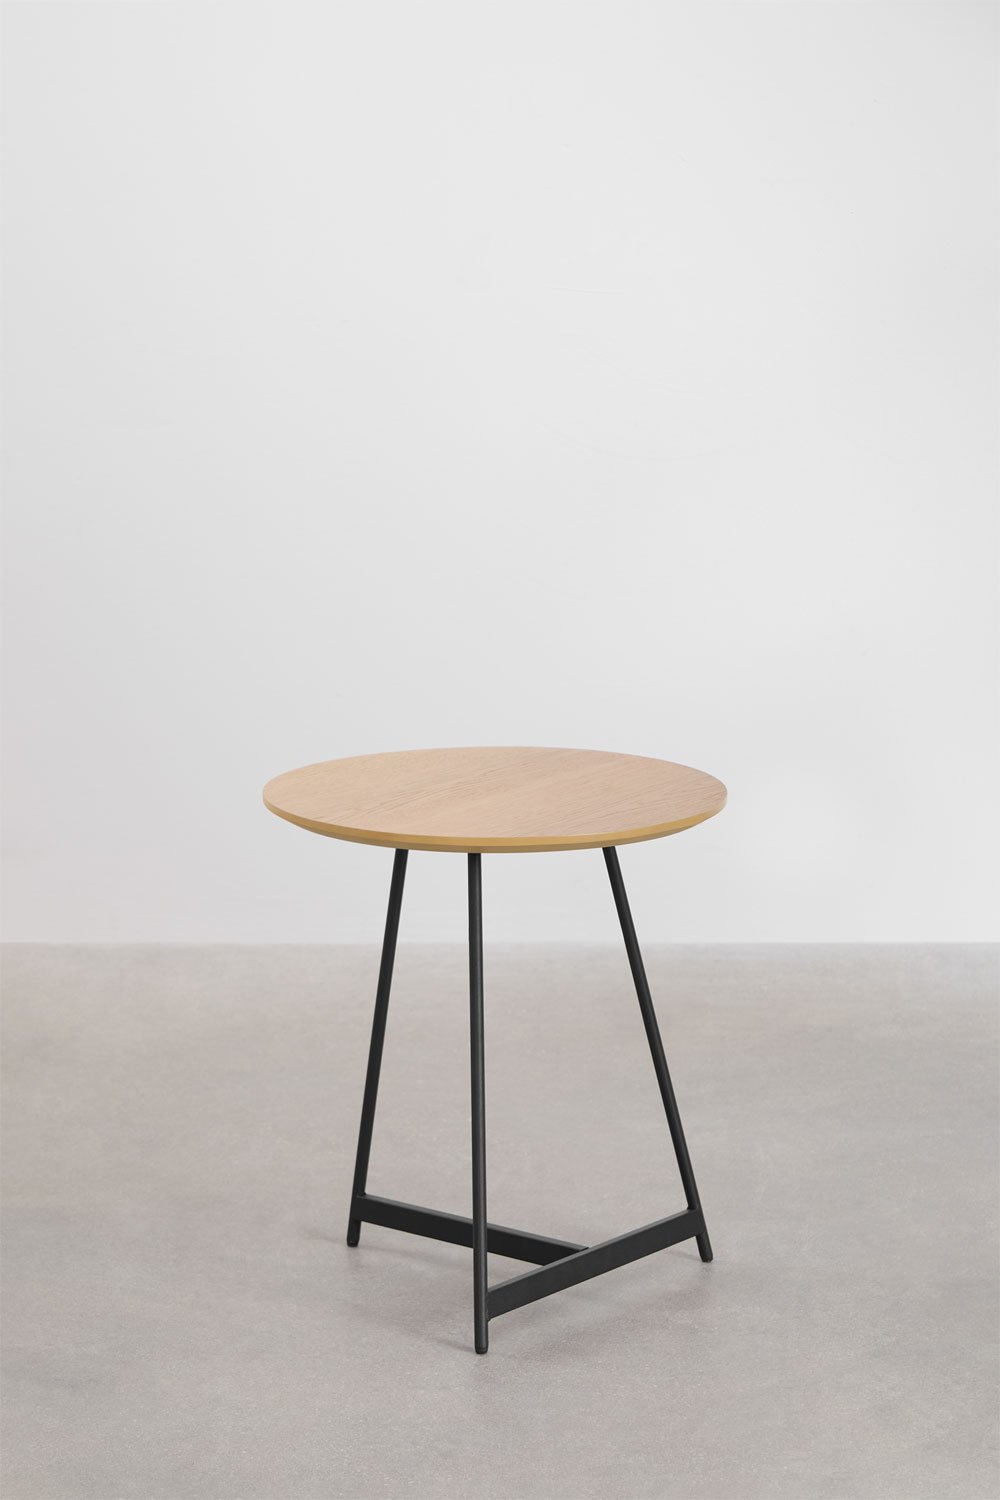 Duvila ronde salontafel van hout en staal, galerij beeld 1